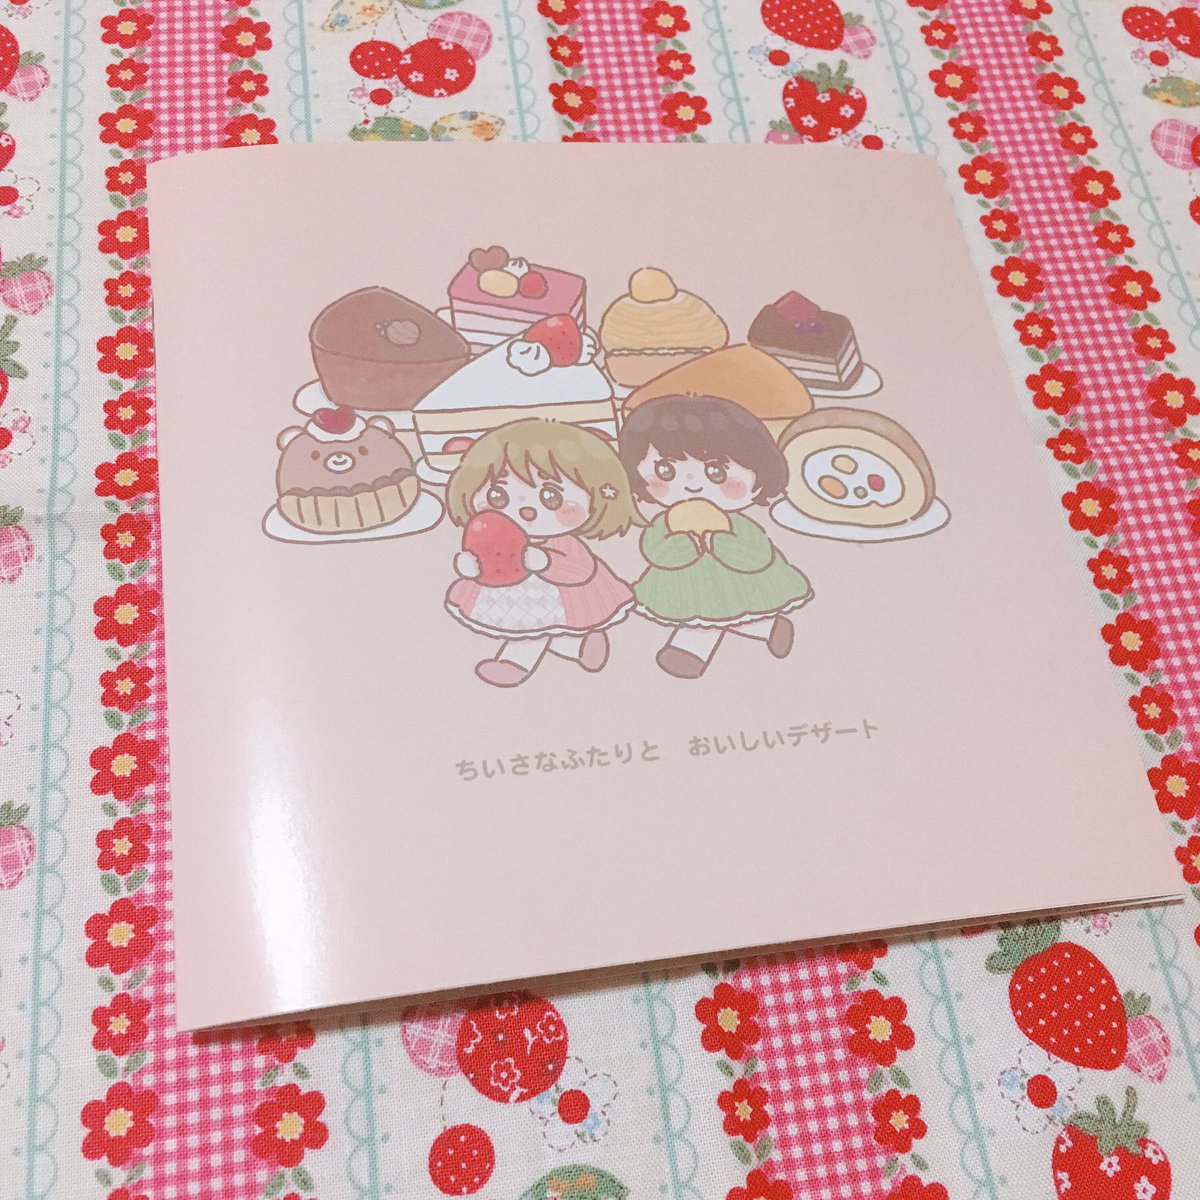 カラマスに持ってく新刊できました? かな子ちゃんと雫ちゃんとデザートの本です〜! 